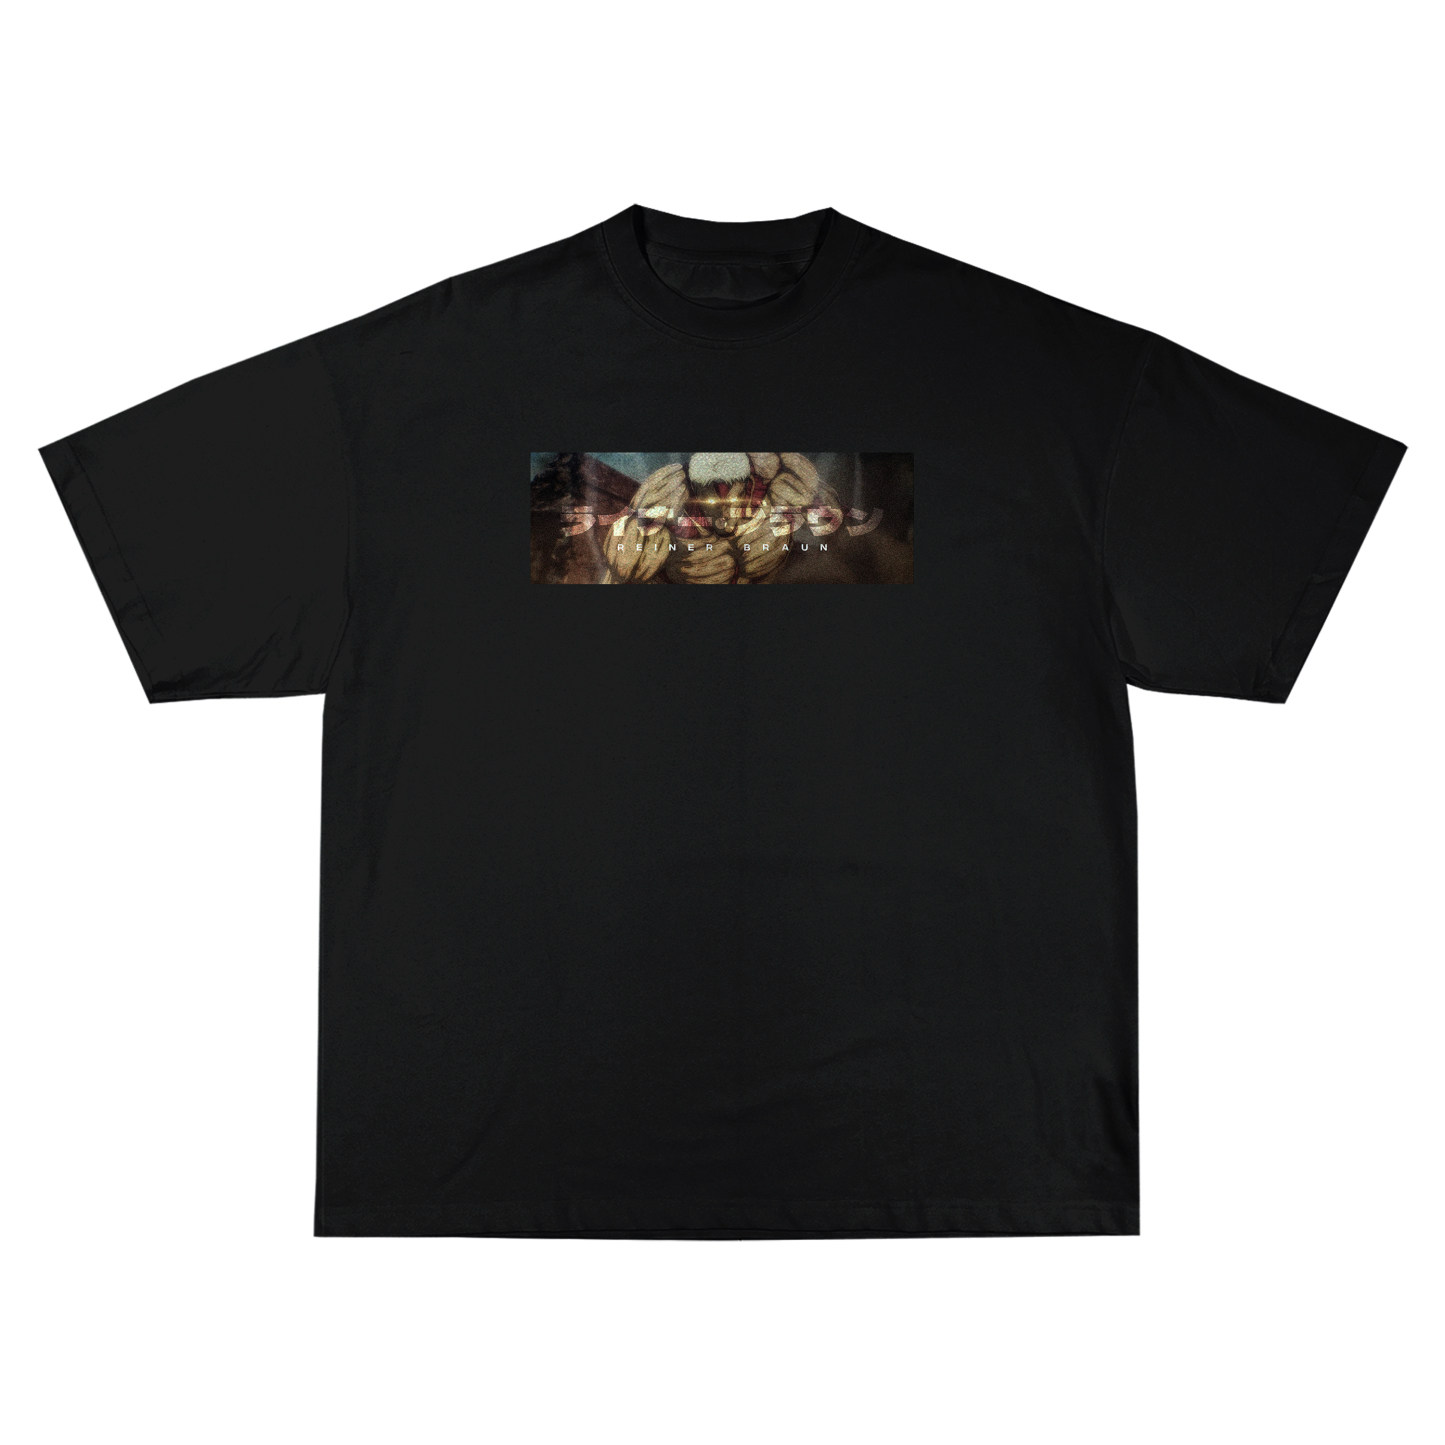 Reiner Braun Attack On Titan | T-Shirt